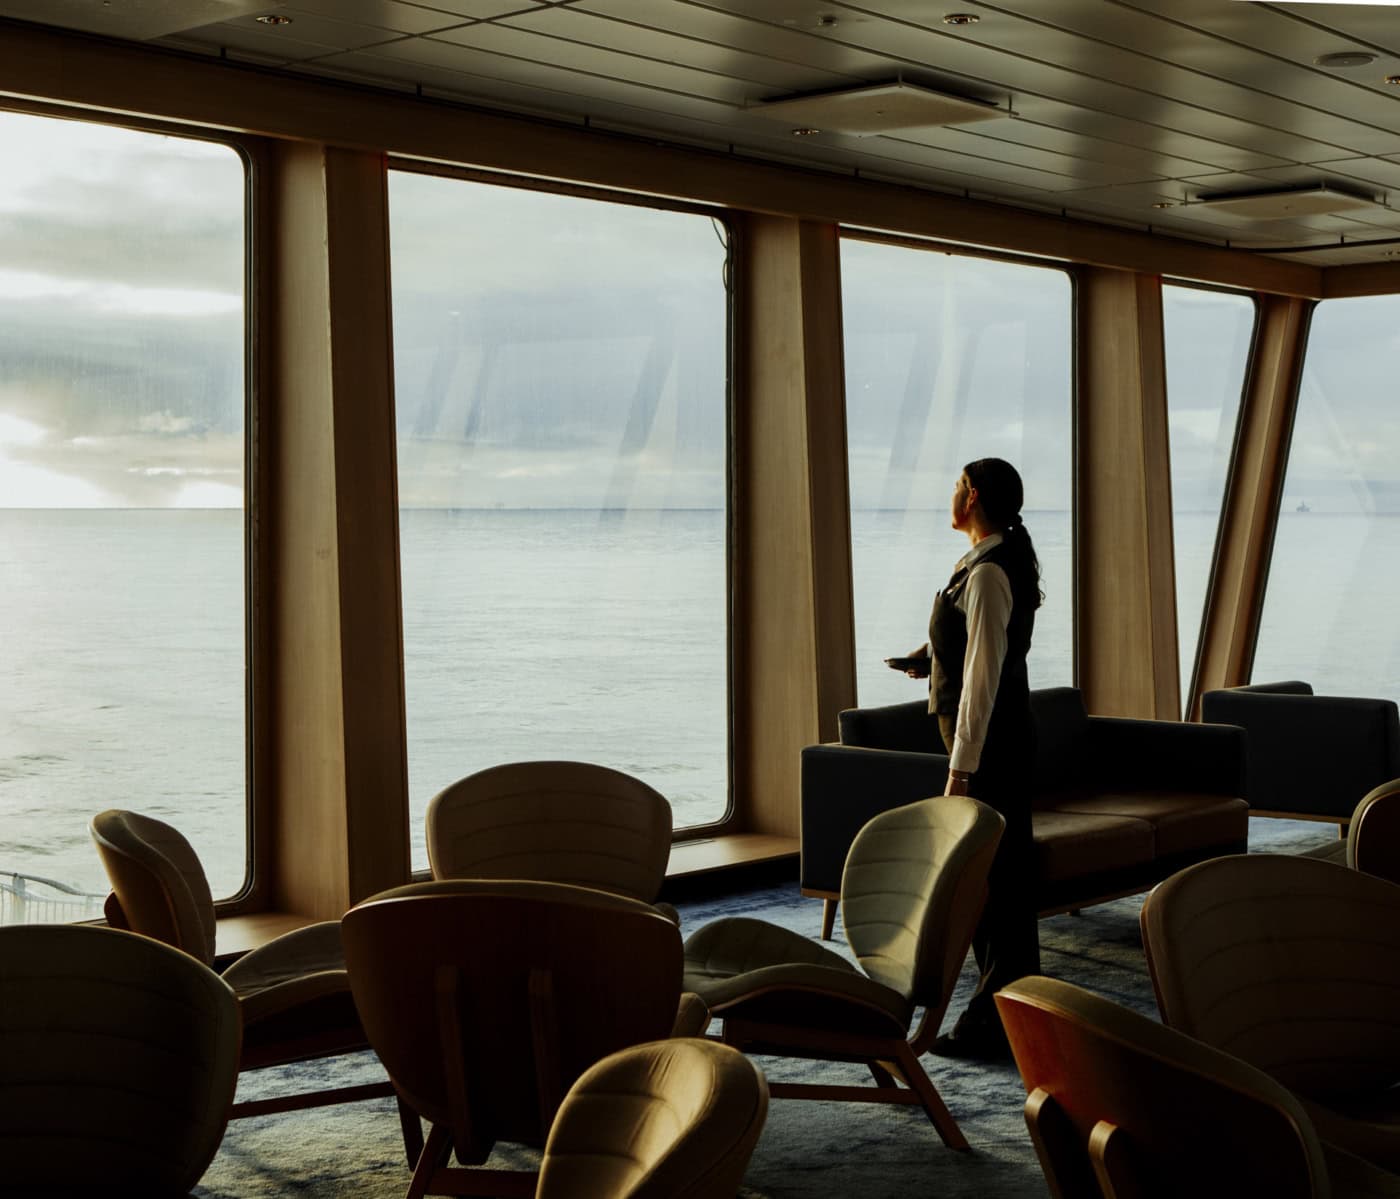 Ein Besatzungsmitglied steht im Innenraum der MS Norröna, wo mehrere leere Tische und Stühle vor großen Fenstern stehen. Das sanfte Licht des frühen Abends schafft eine träumerische Atmosphäre.